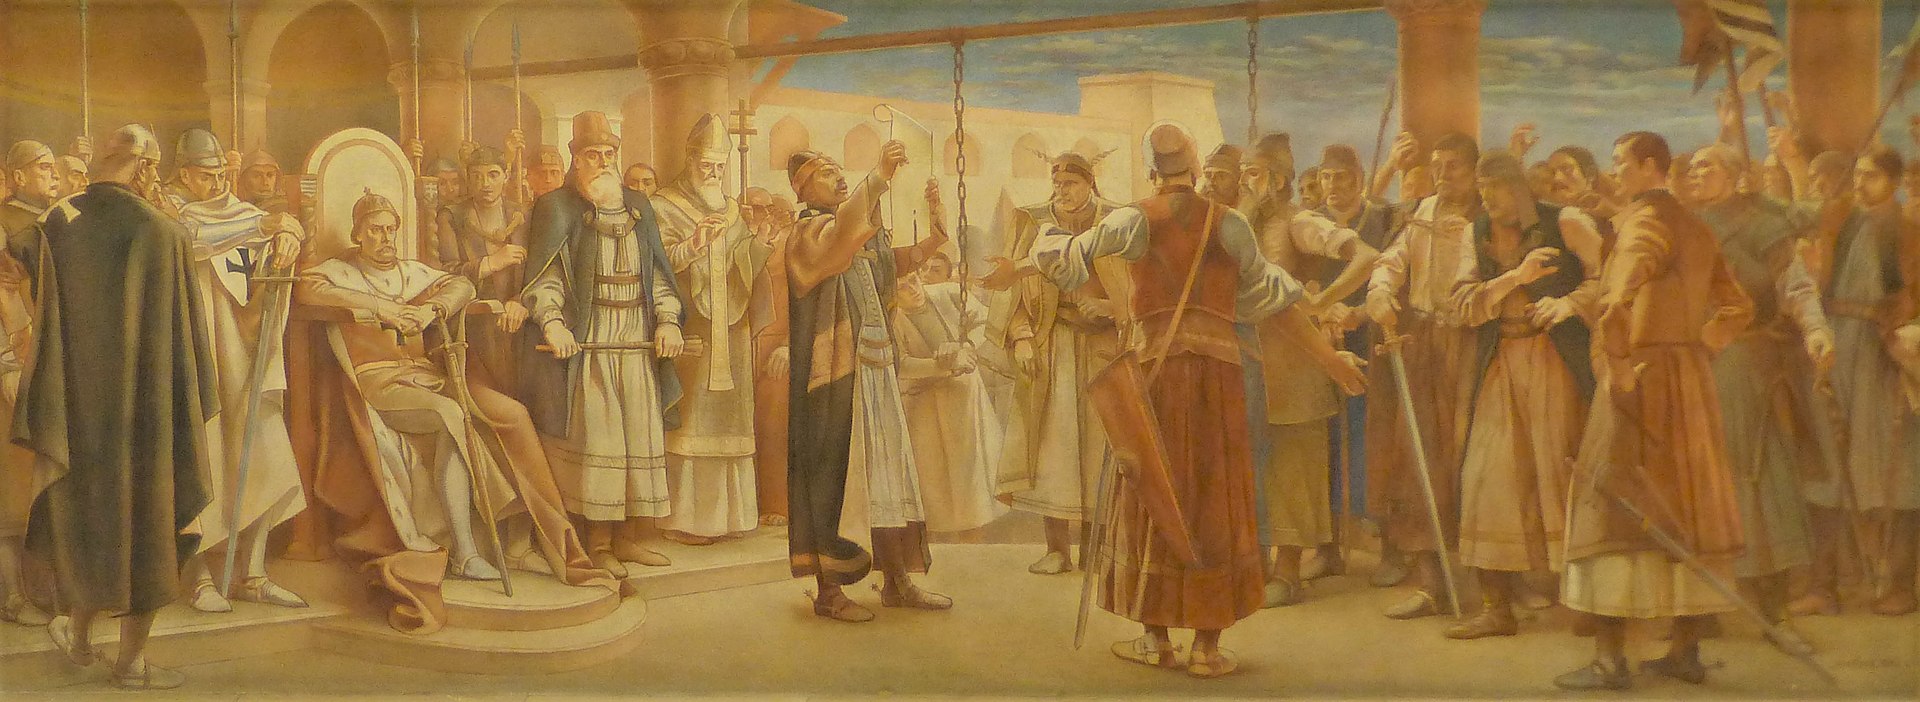 Mátyás Jantyikin maalaus Az Aranybulla kihirdetése [Kultaisen bullan julistaminen] vuodelta 1901 Unkarin entisen ylähuoneen kamarissa.*